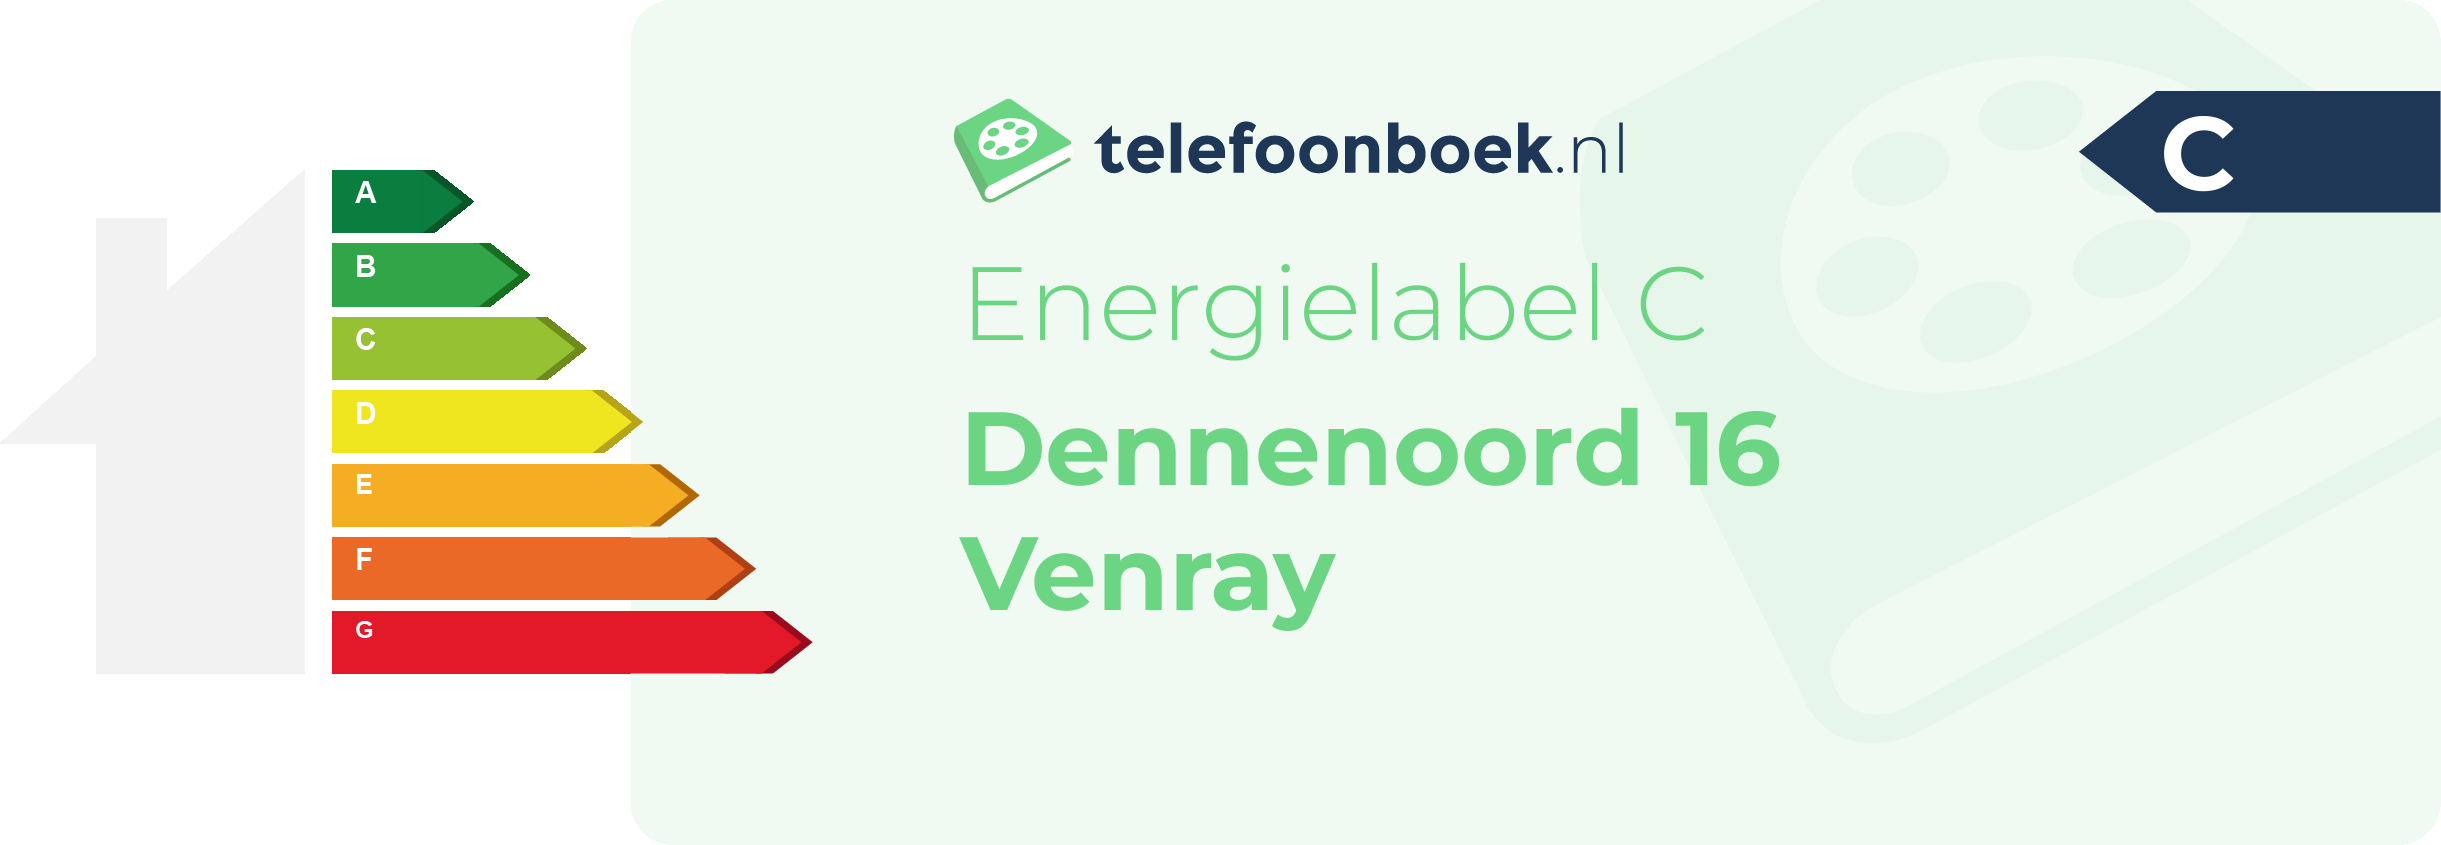 Energielabel Dennenoord 16 Venray